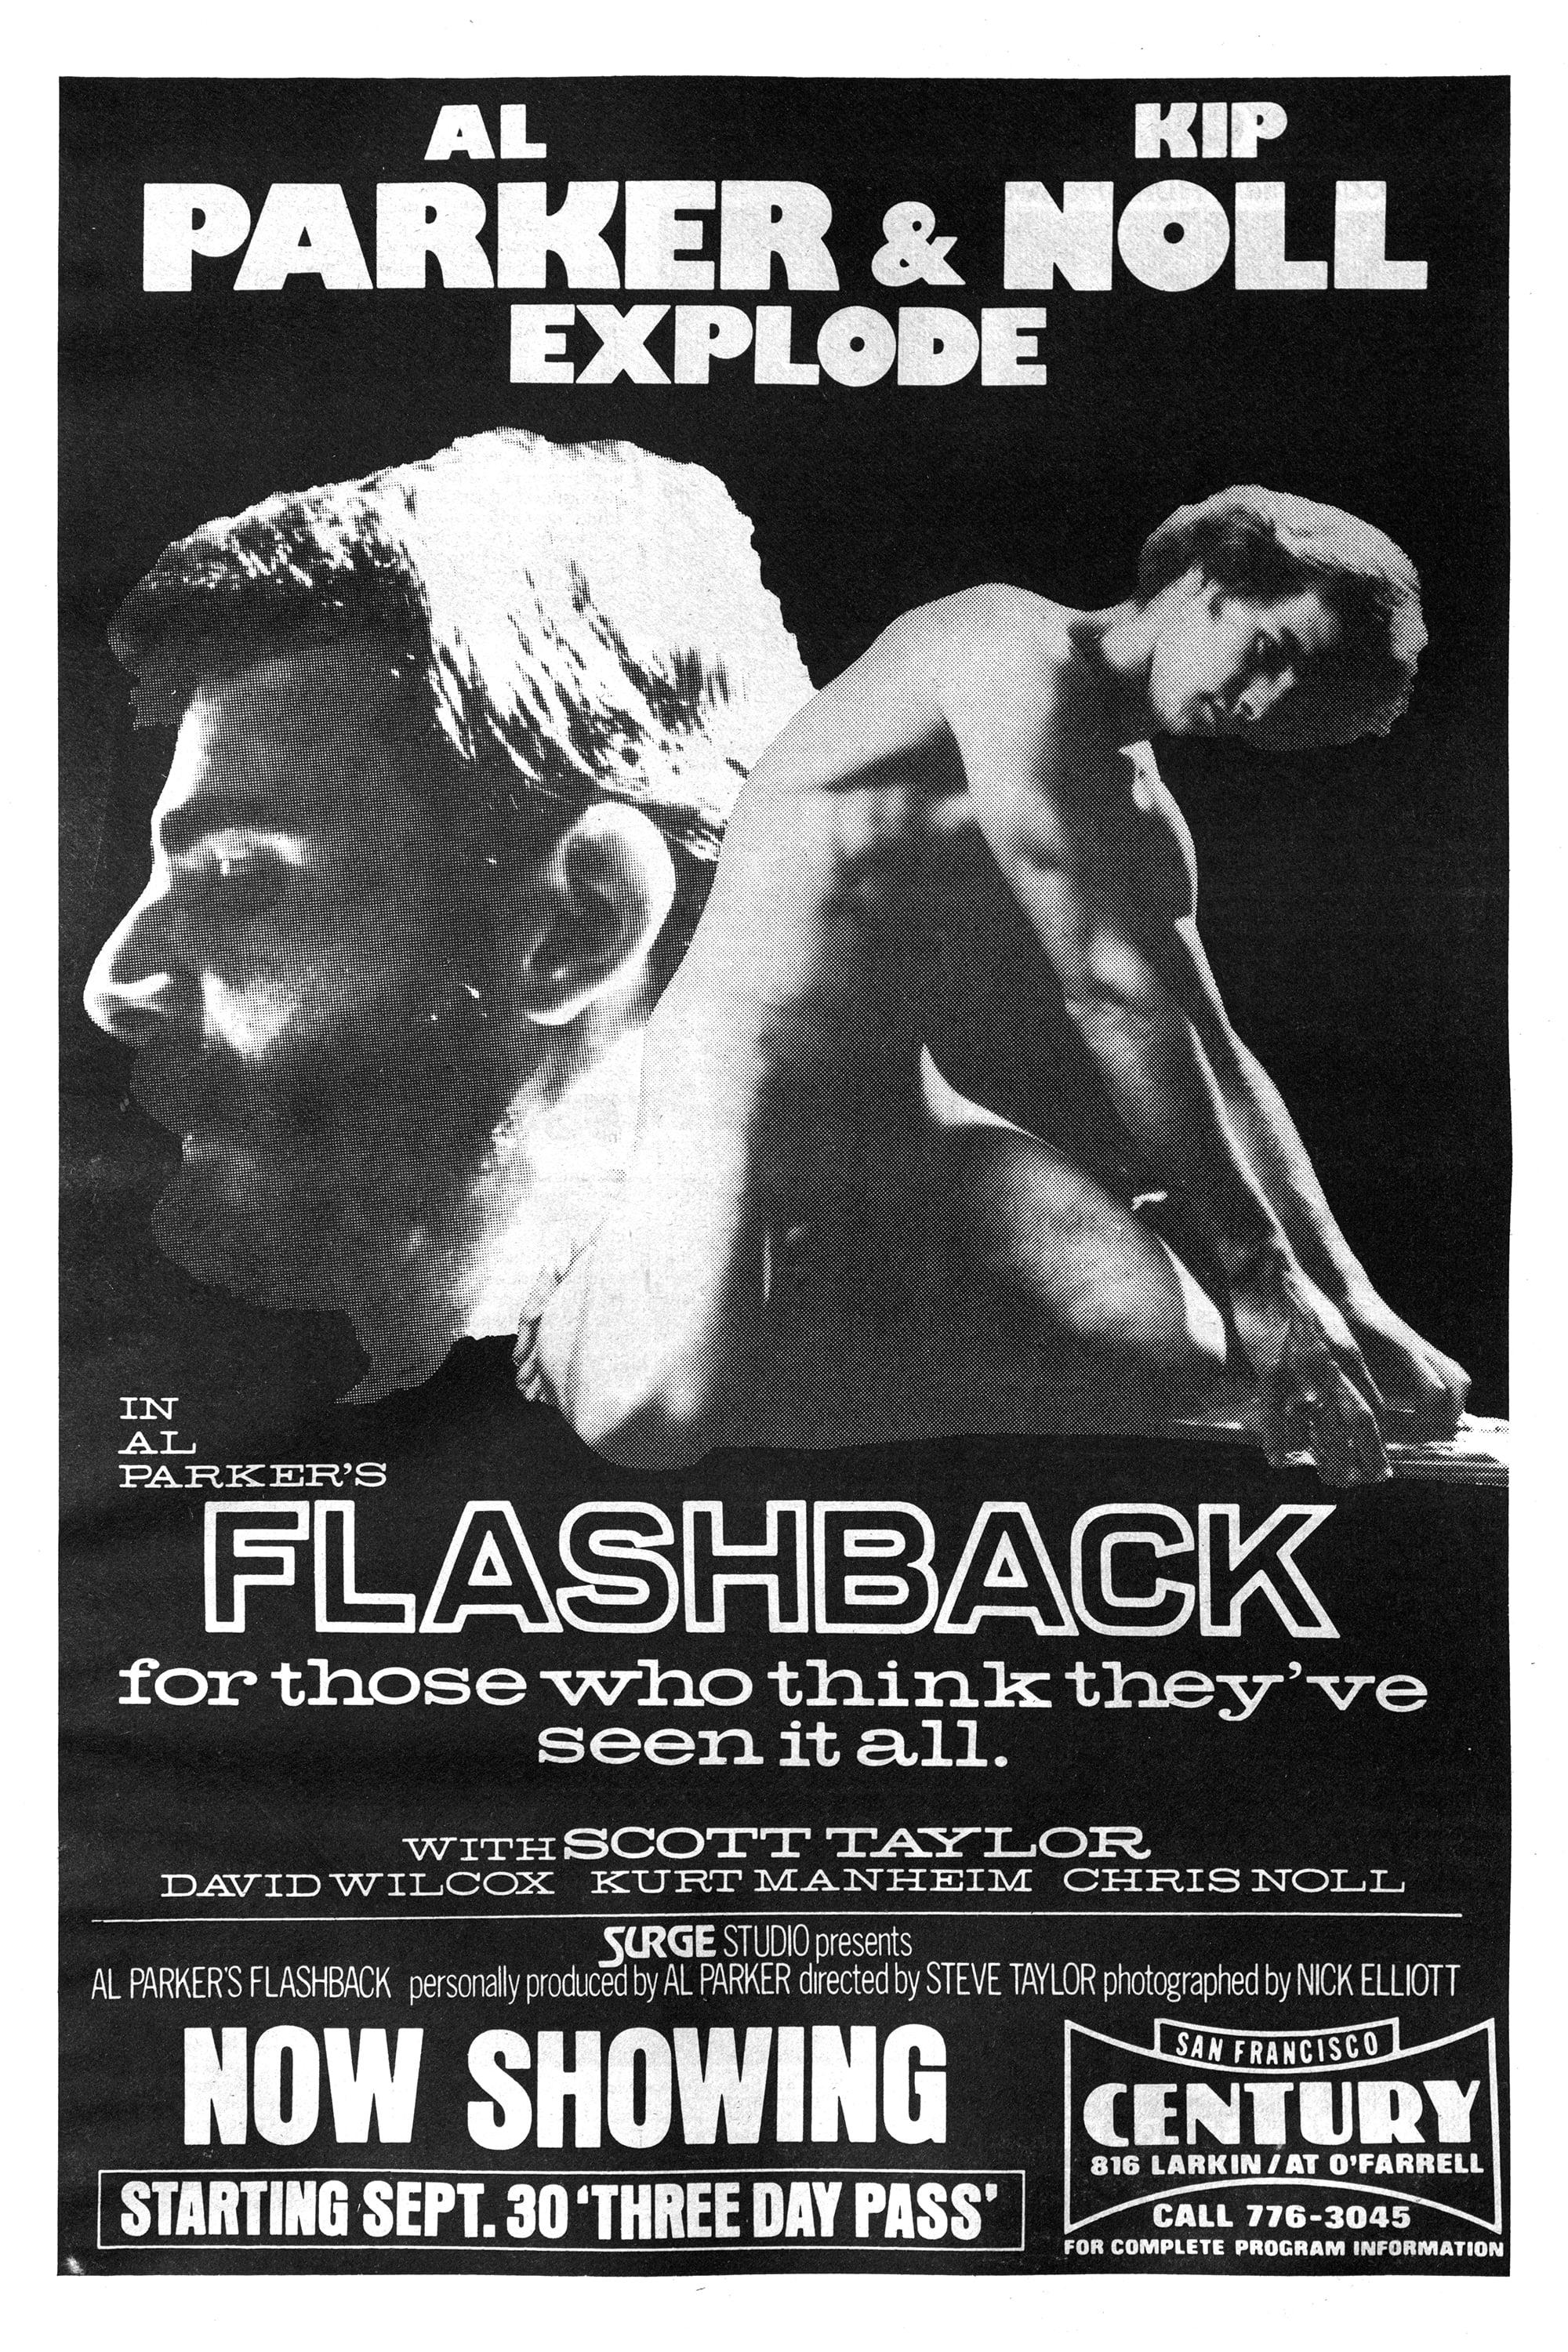 Al Parker's Flashback poster